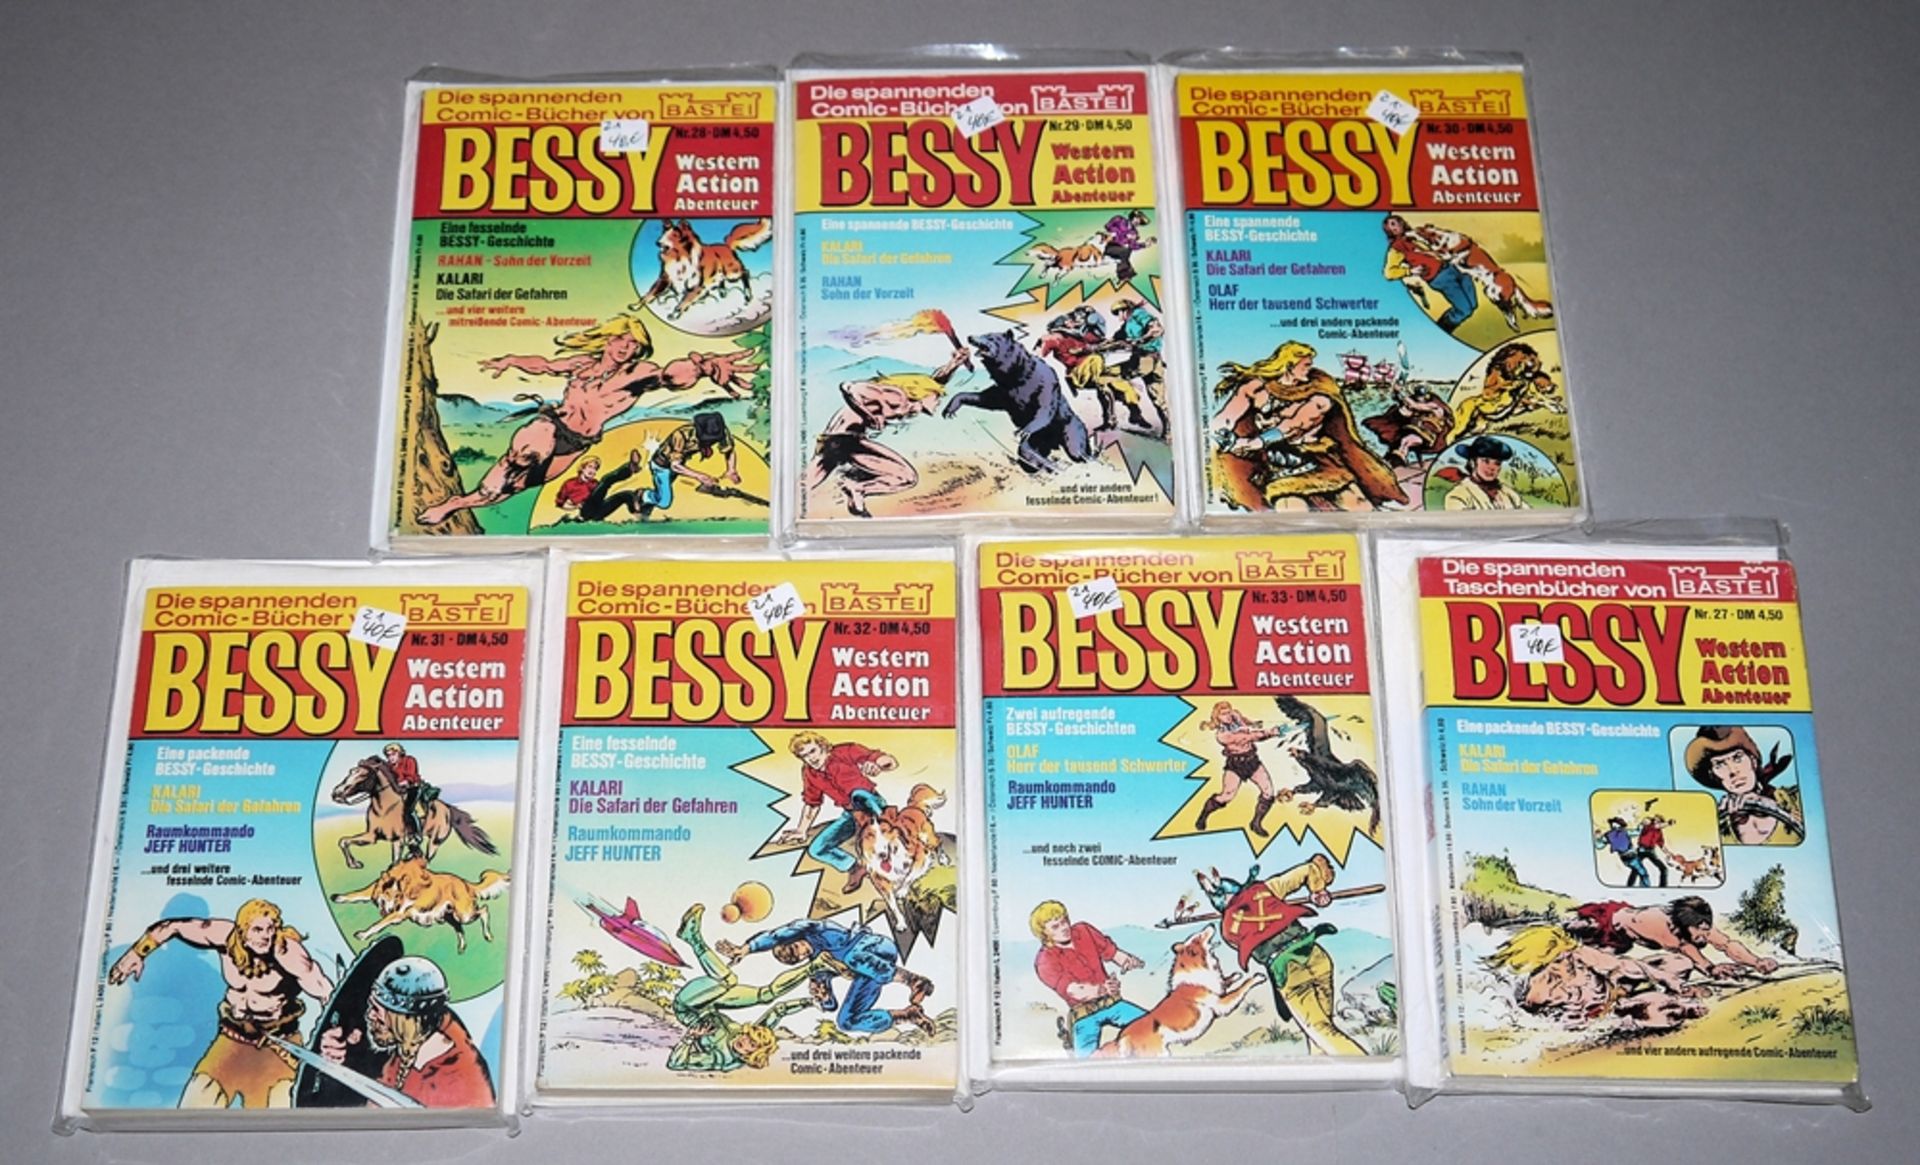 Bessy Taschenbuch, Bastei Vlg., 7 Bände, Z 1-2<